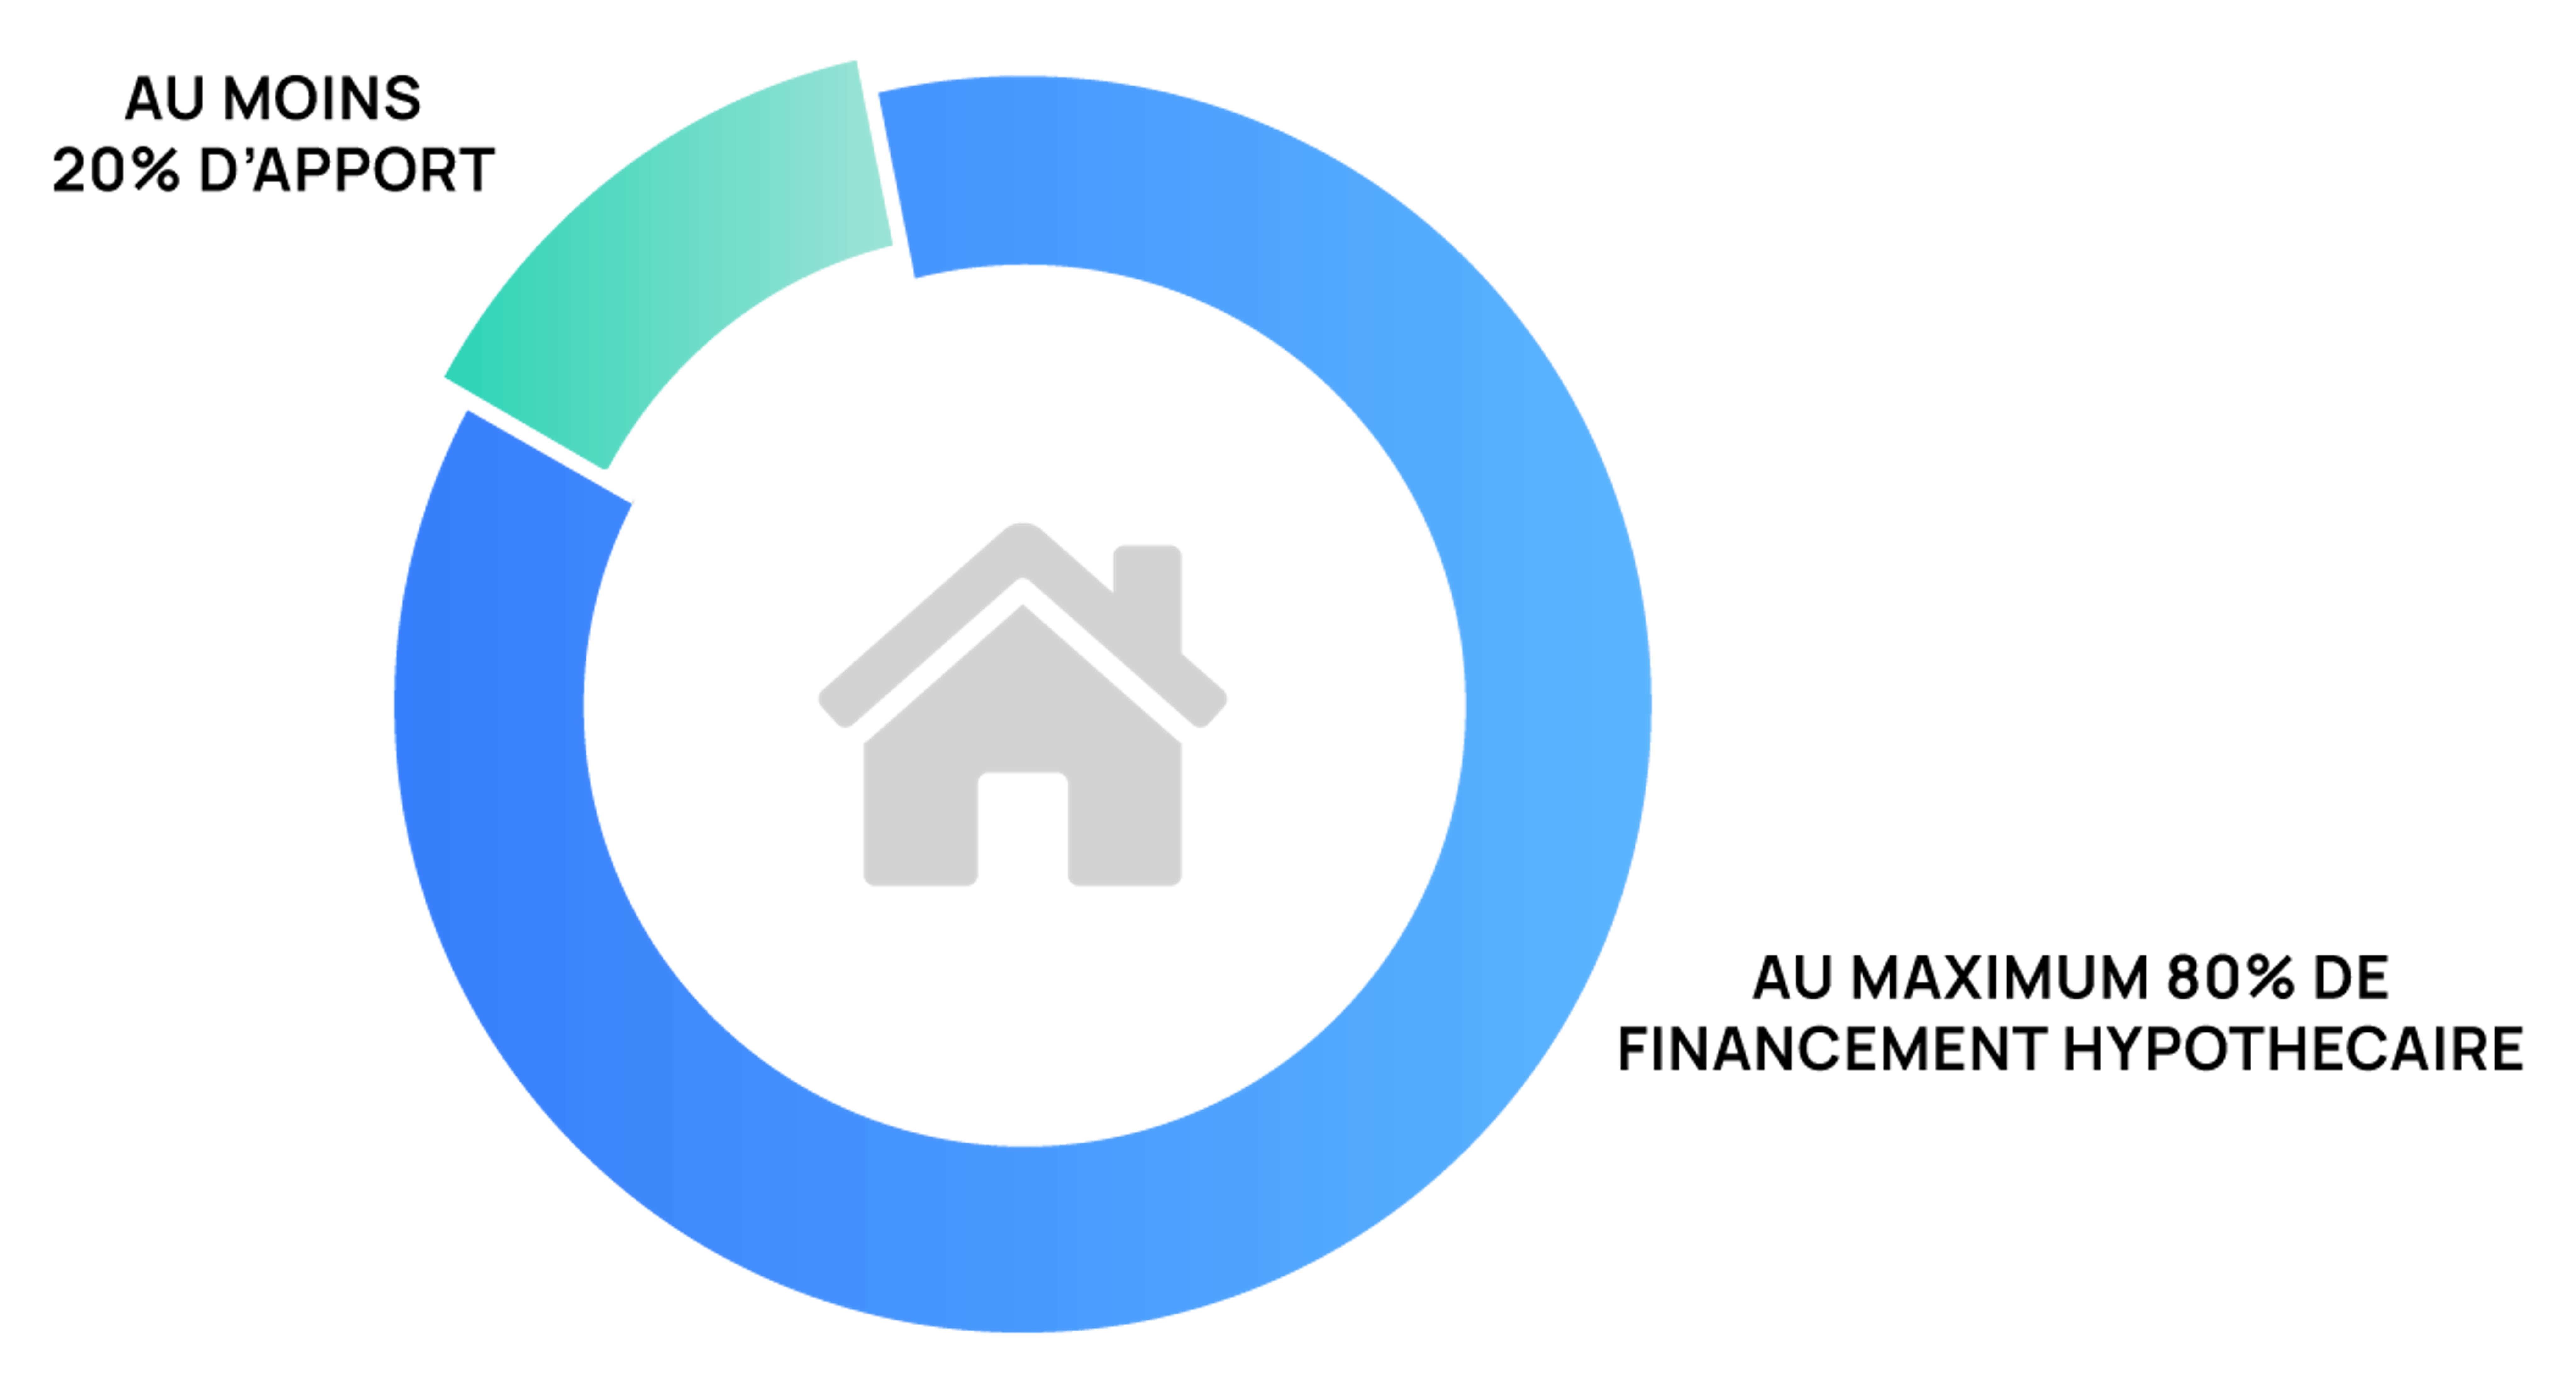 Répartition entre fonds propres et financement hypothécaire